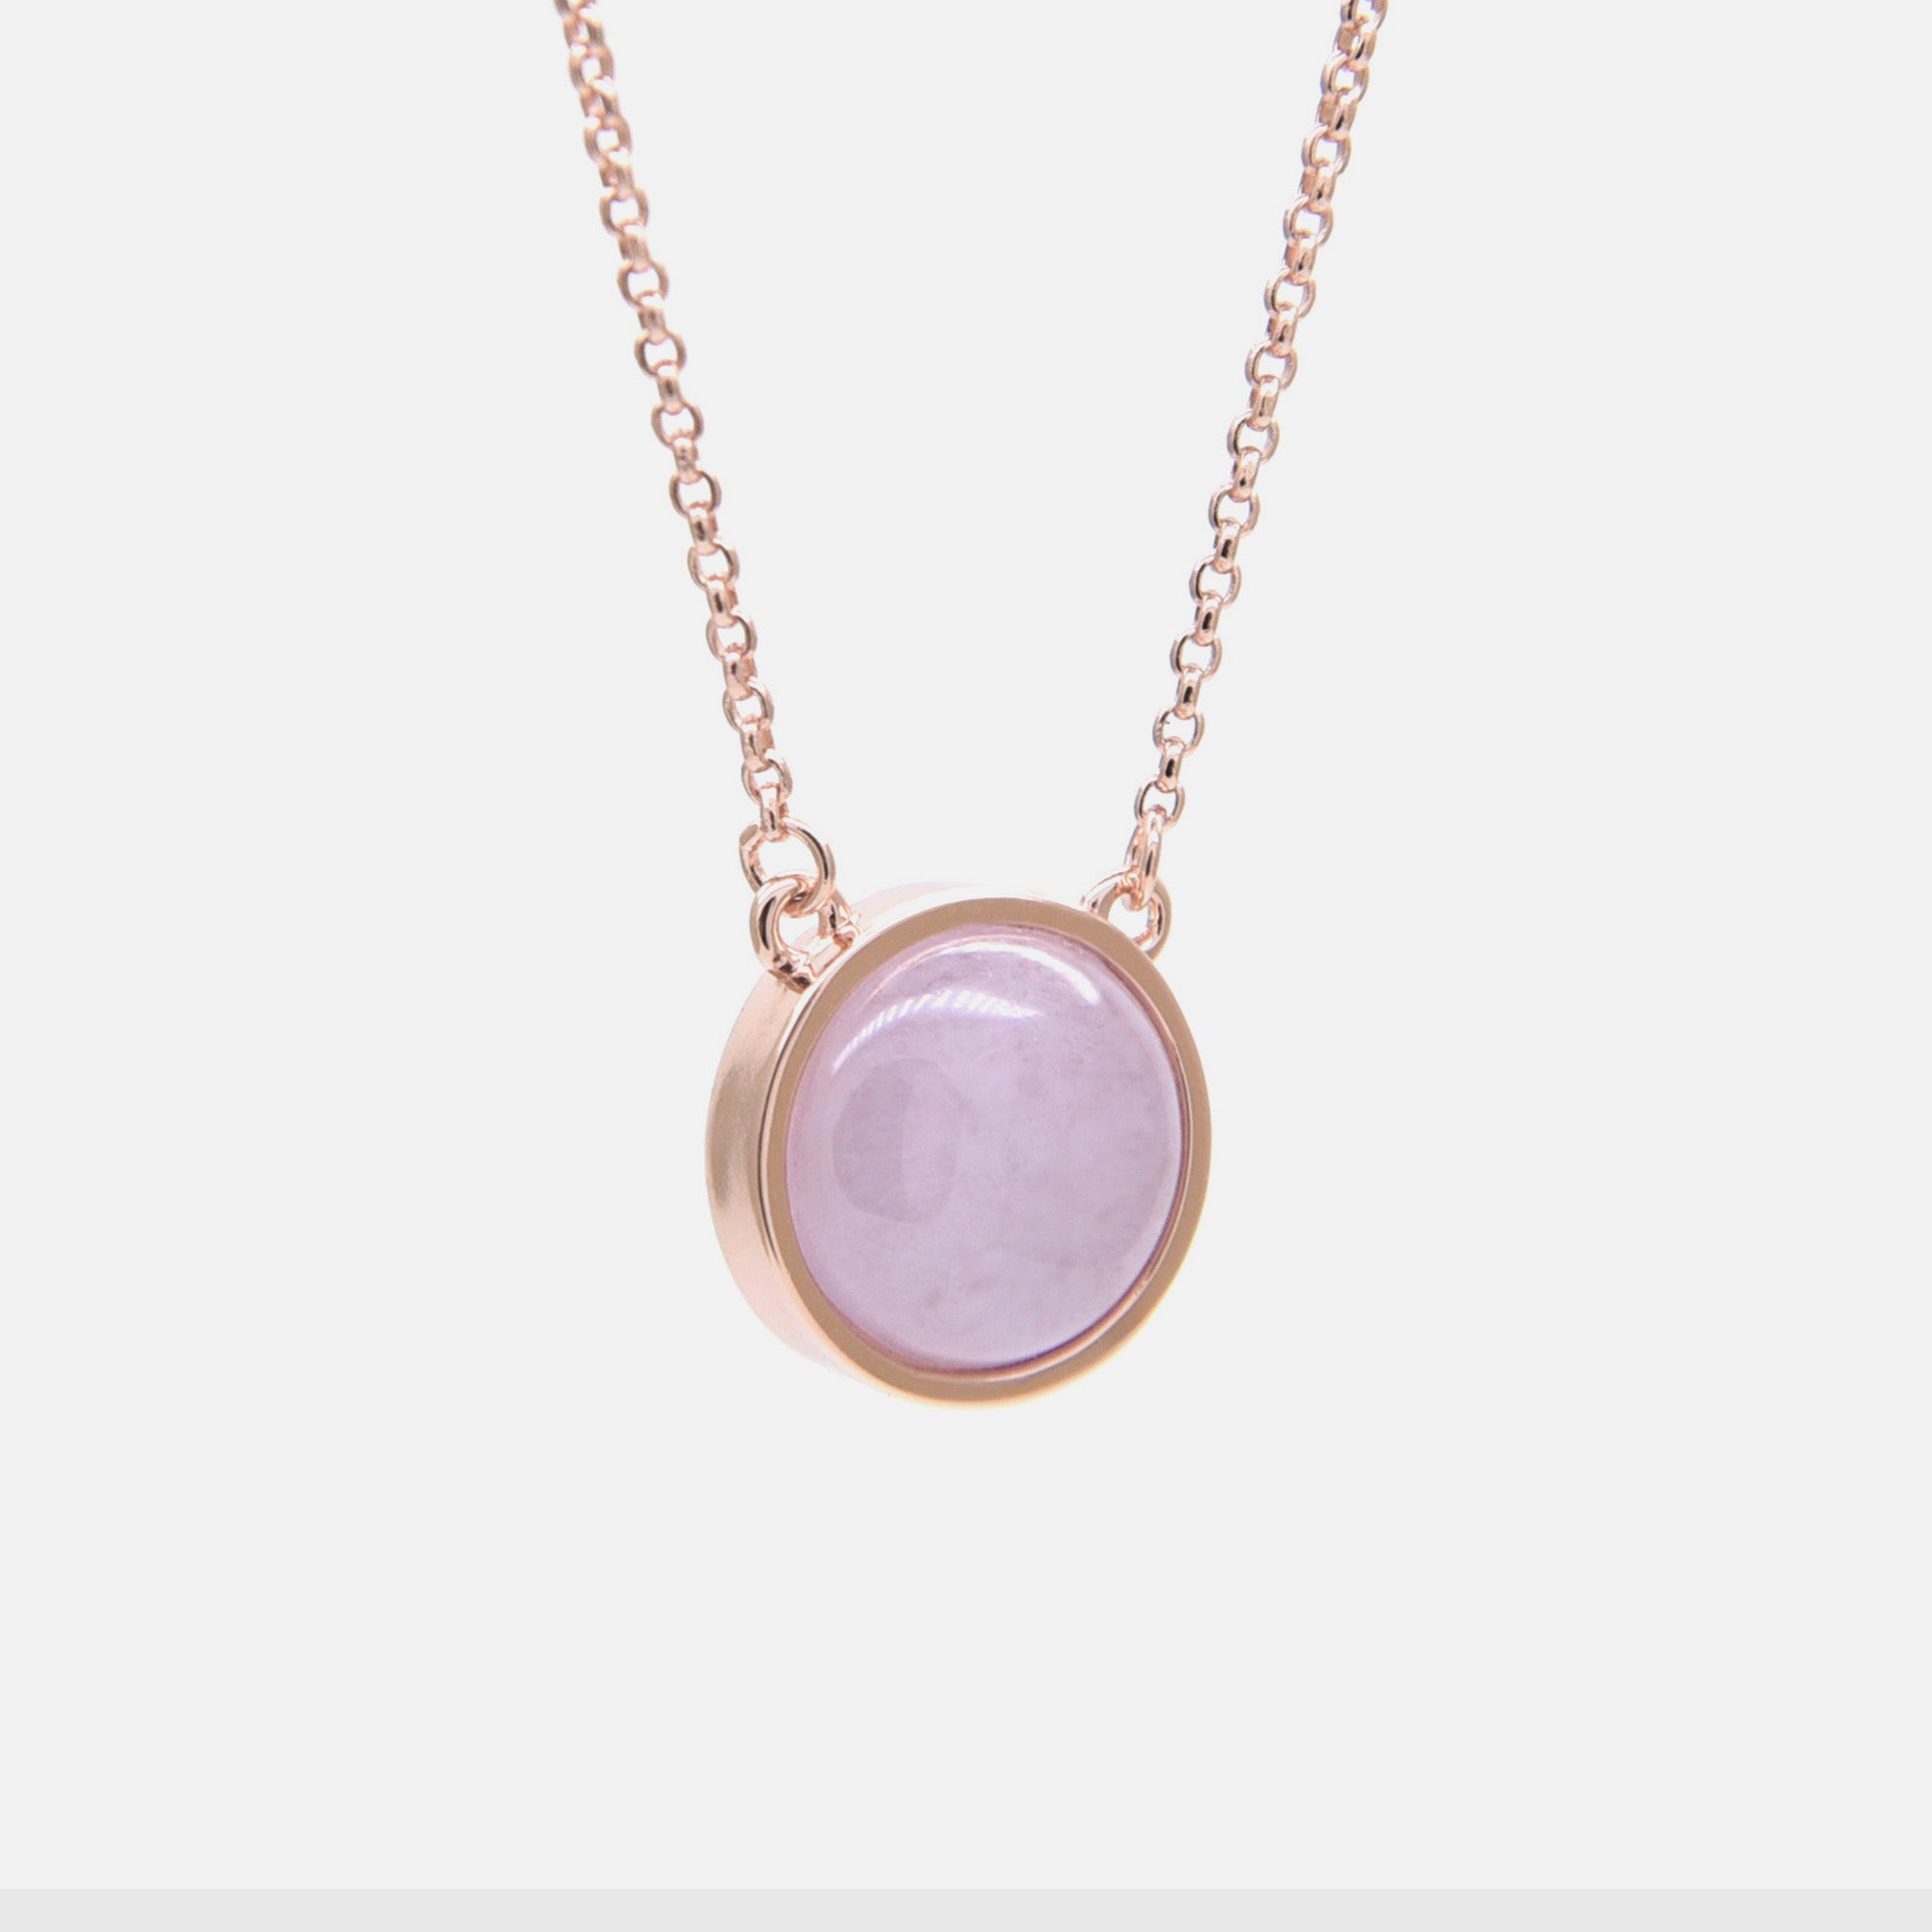 EDEN 悅 Necklace in Light Lavender Jade